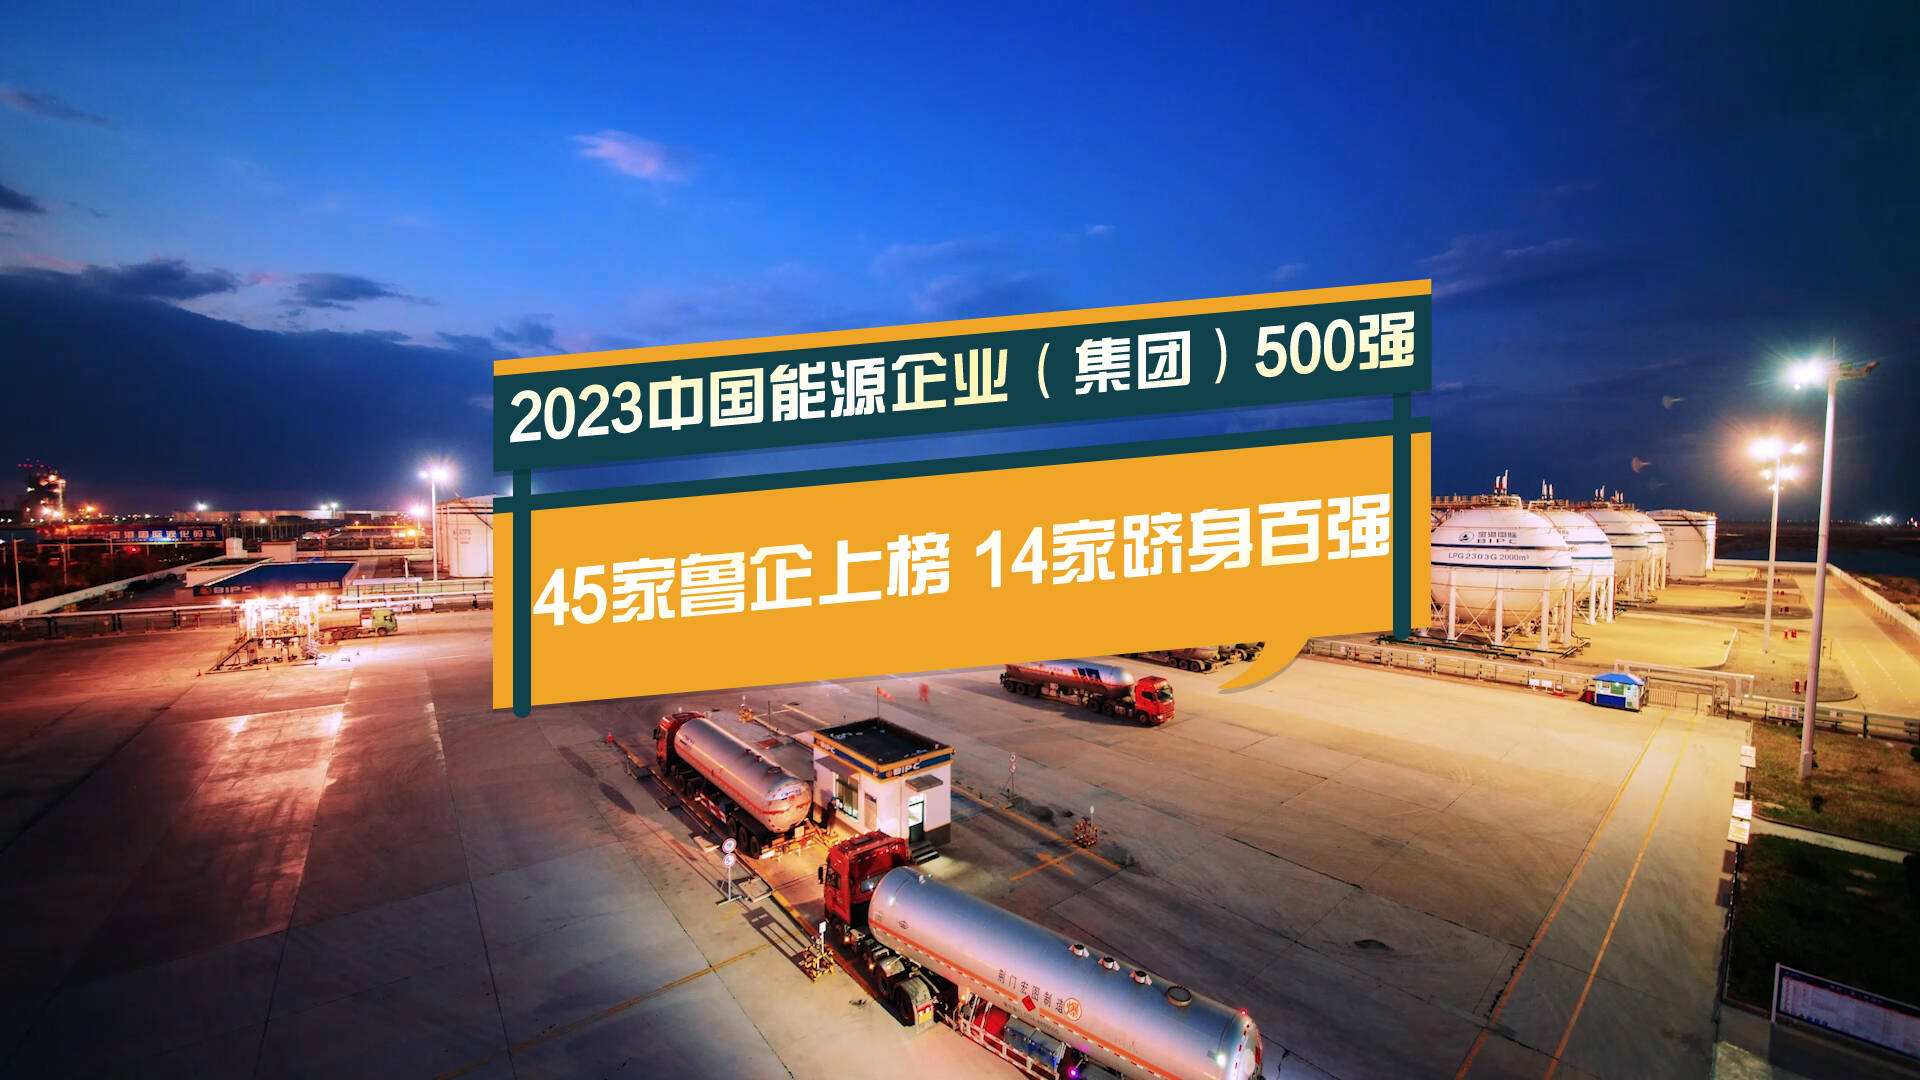 微视频丨向新而变 向绿而行！45家鲁企上榜2023中国能源企业（集团）500强